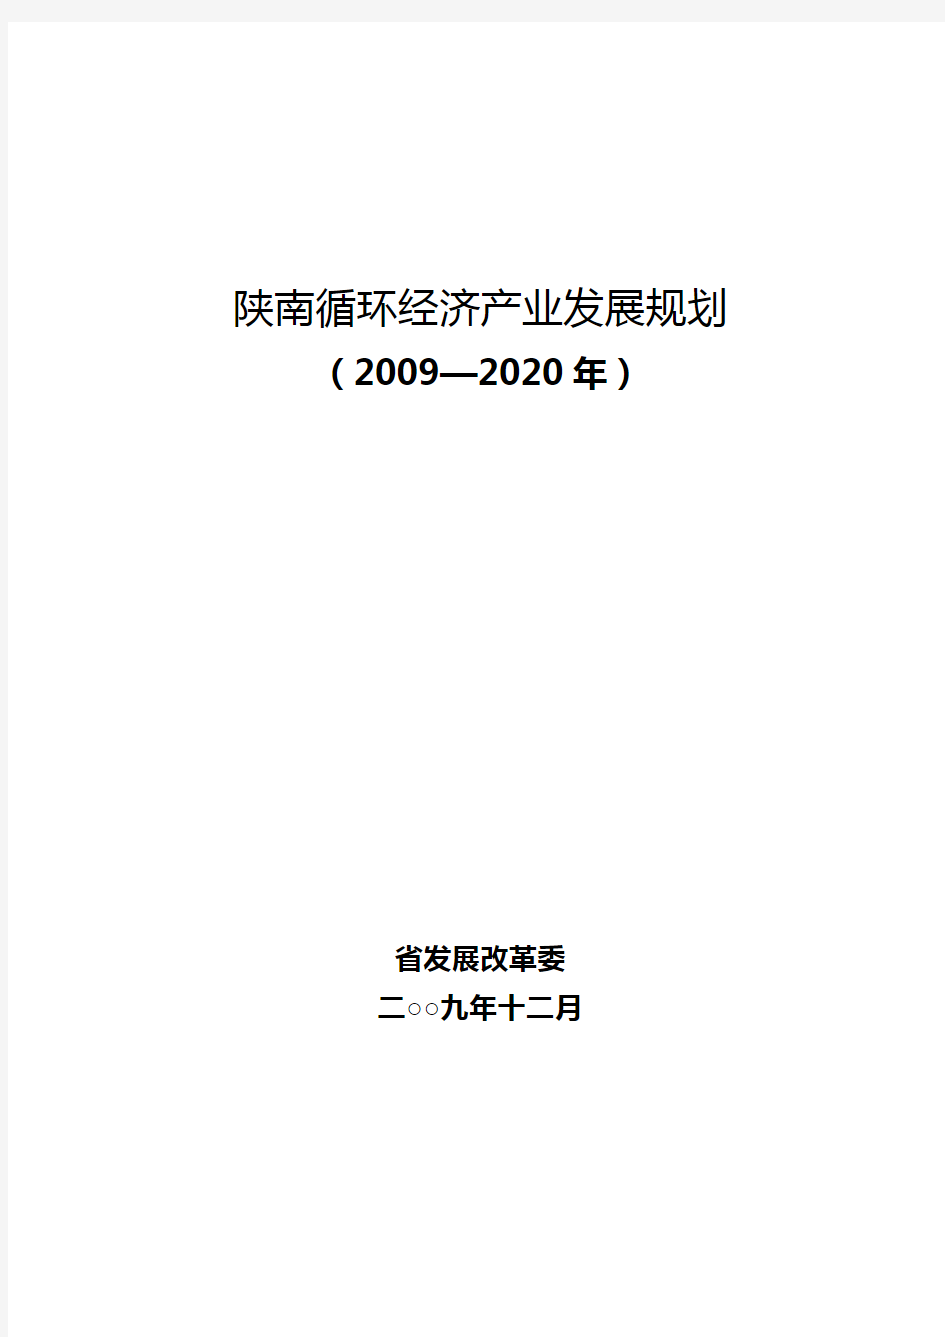 2020年(发展战略)陕西经济发展规划年